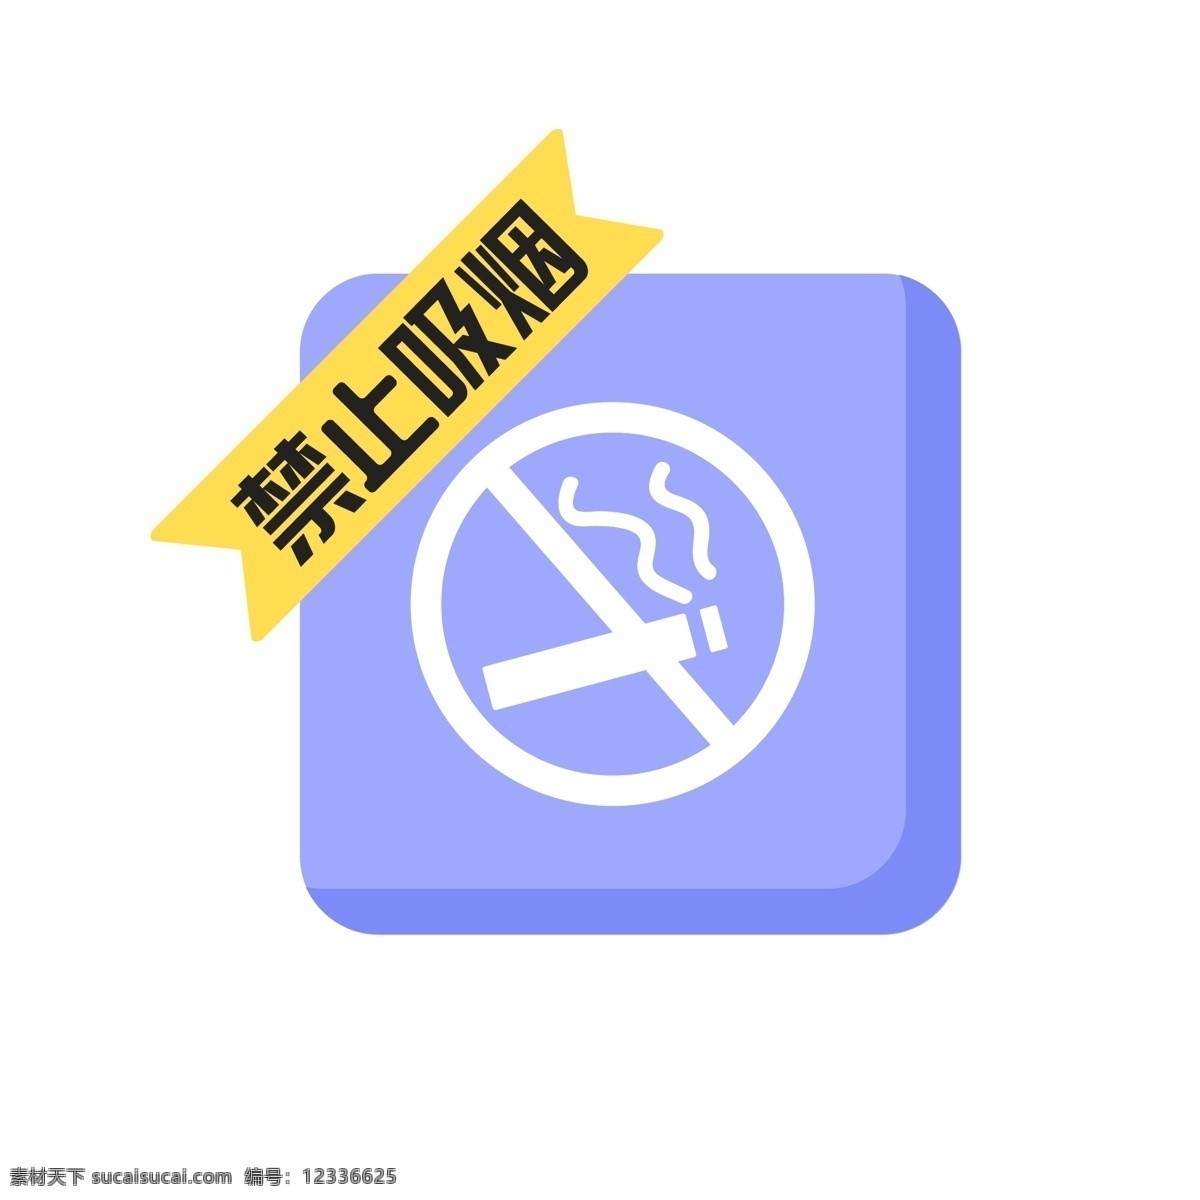 禁止 吸烟 警示牌 元素 禁烟标志 禁止吸烟 禁言 提示牌 禁烟